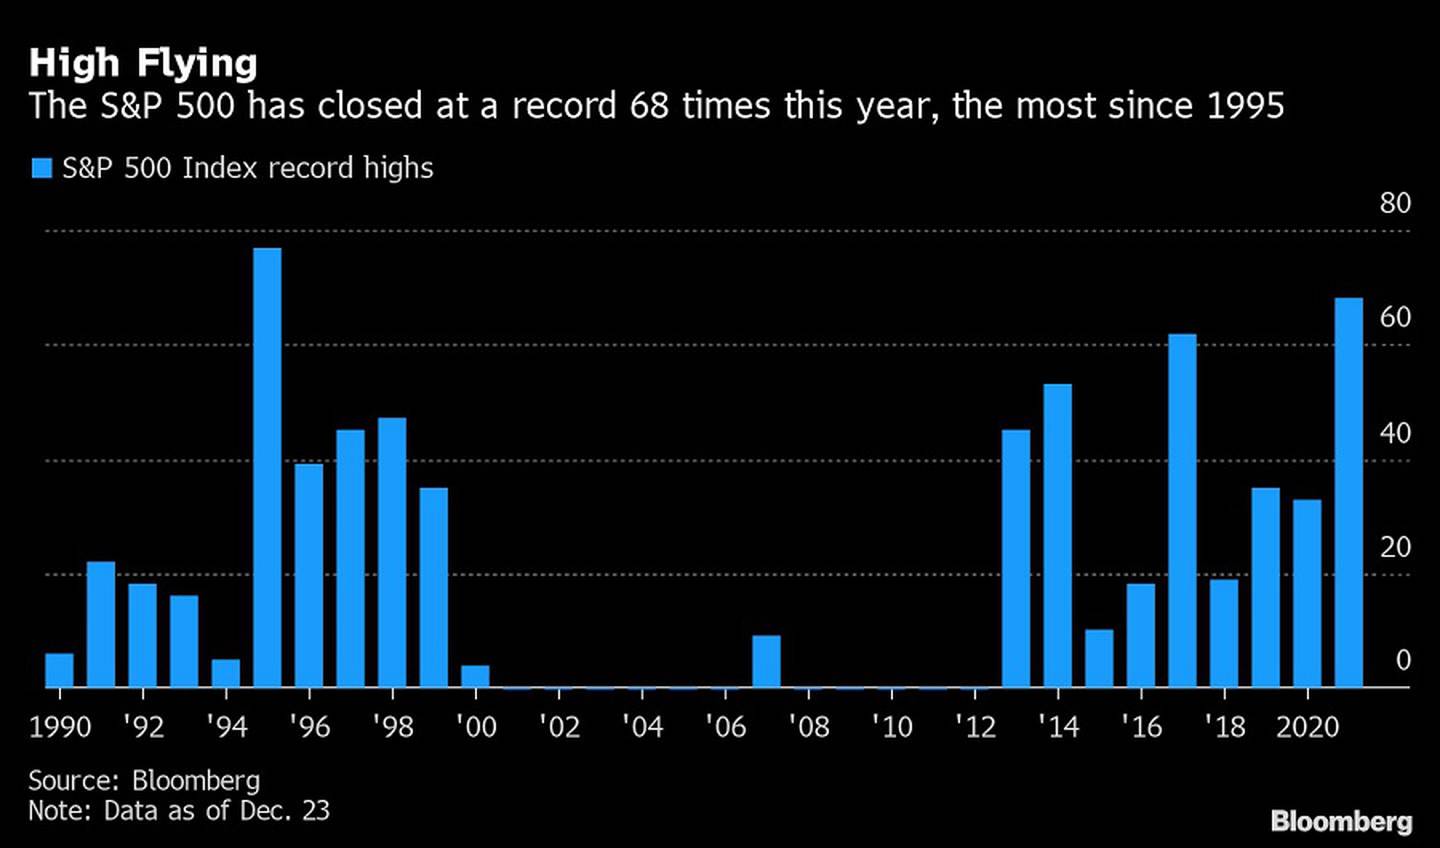 El S&P 500 ha cerrado con récords 68 veces este año, siendo la mayor cantidad desde 1995.dfd